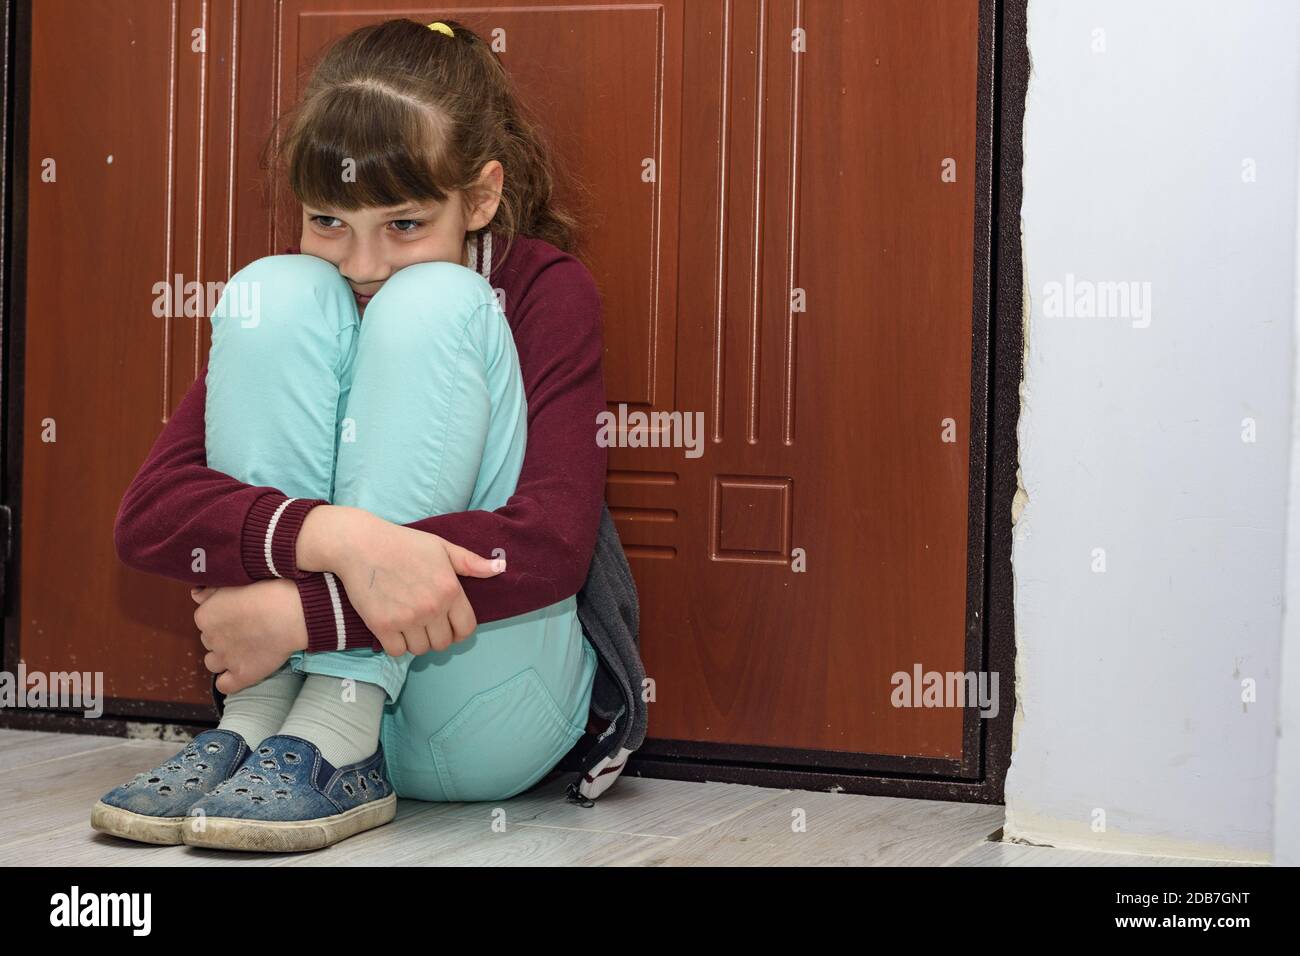 Upset girl sitting at the front door hugging her knees Stock Photo